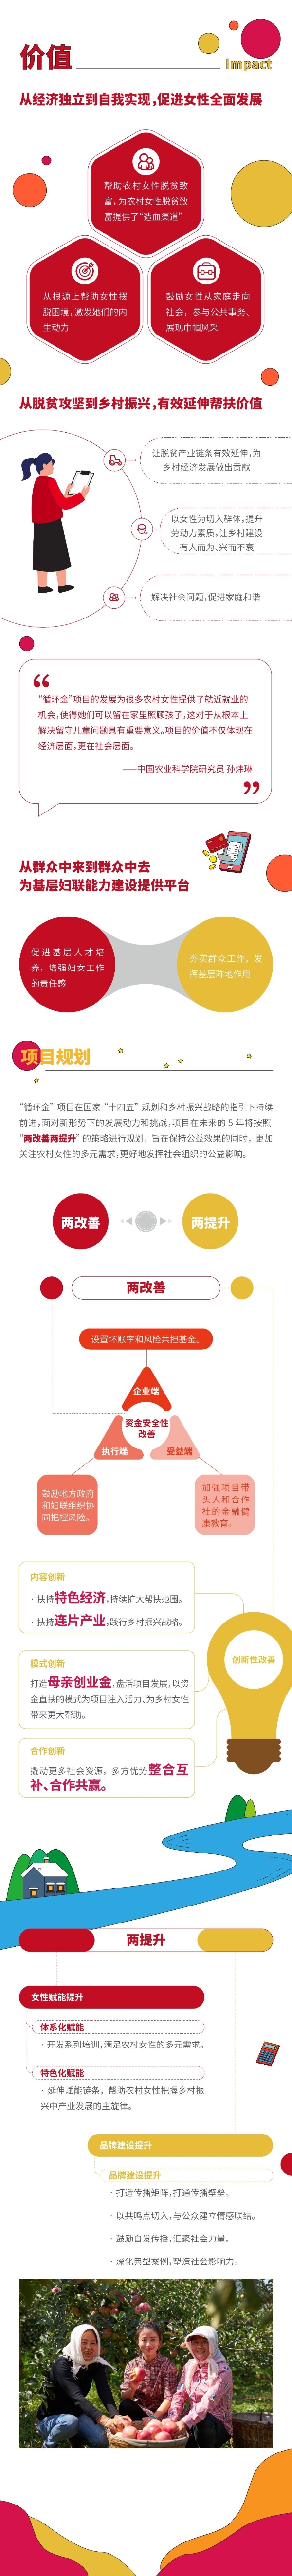 一图读懂中国妇女发展基金会@她创业计划-母亲创业循环金项目评估与规划